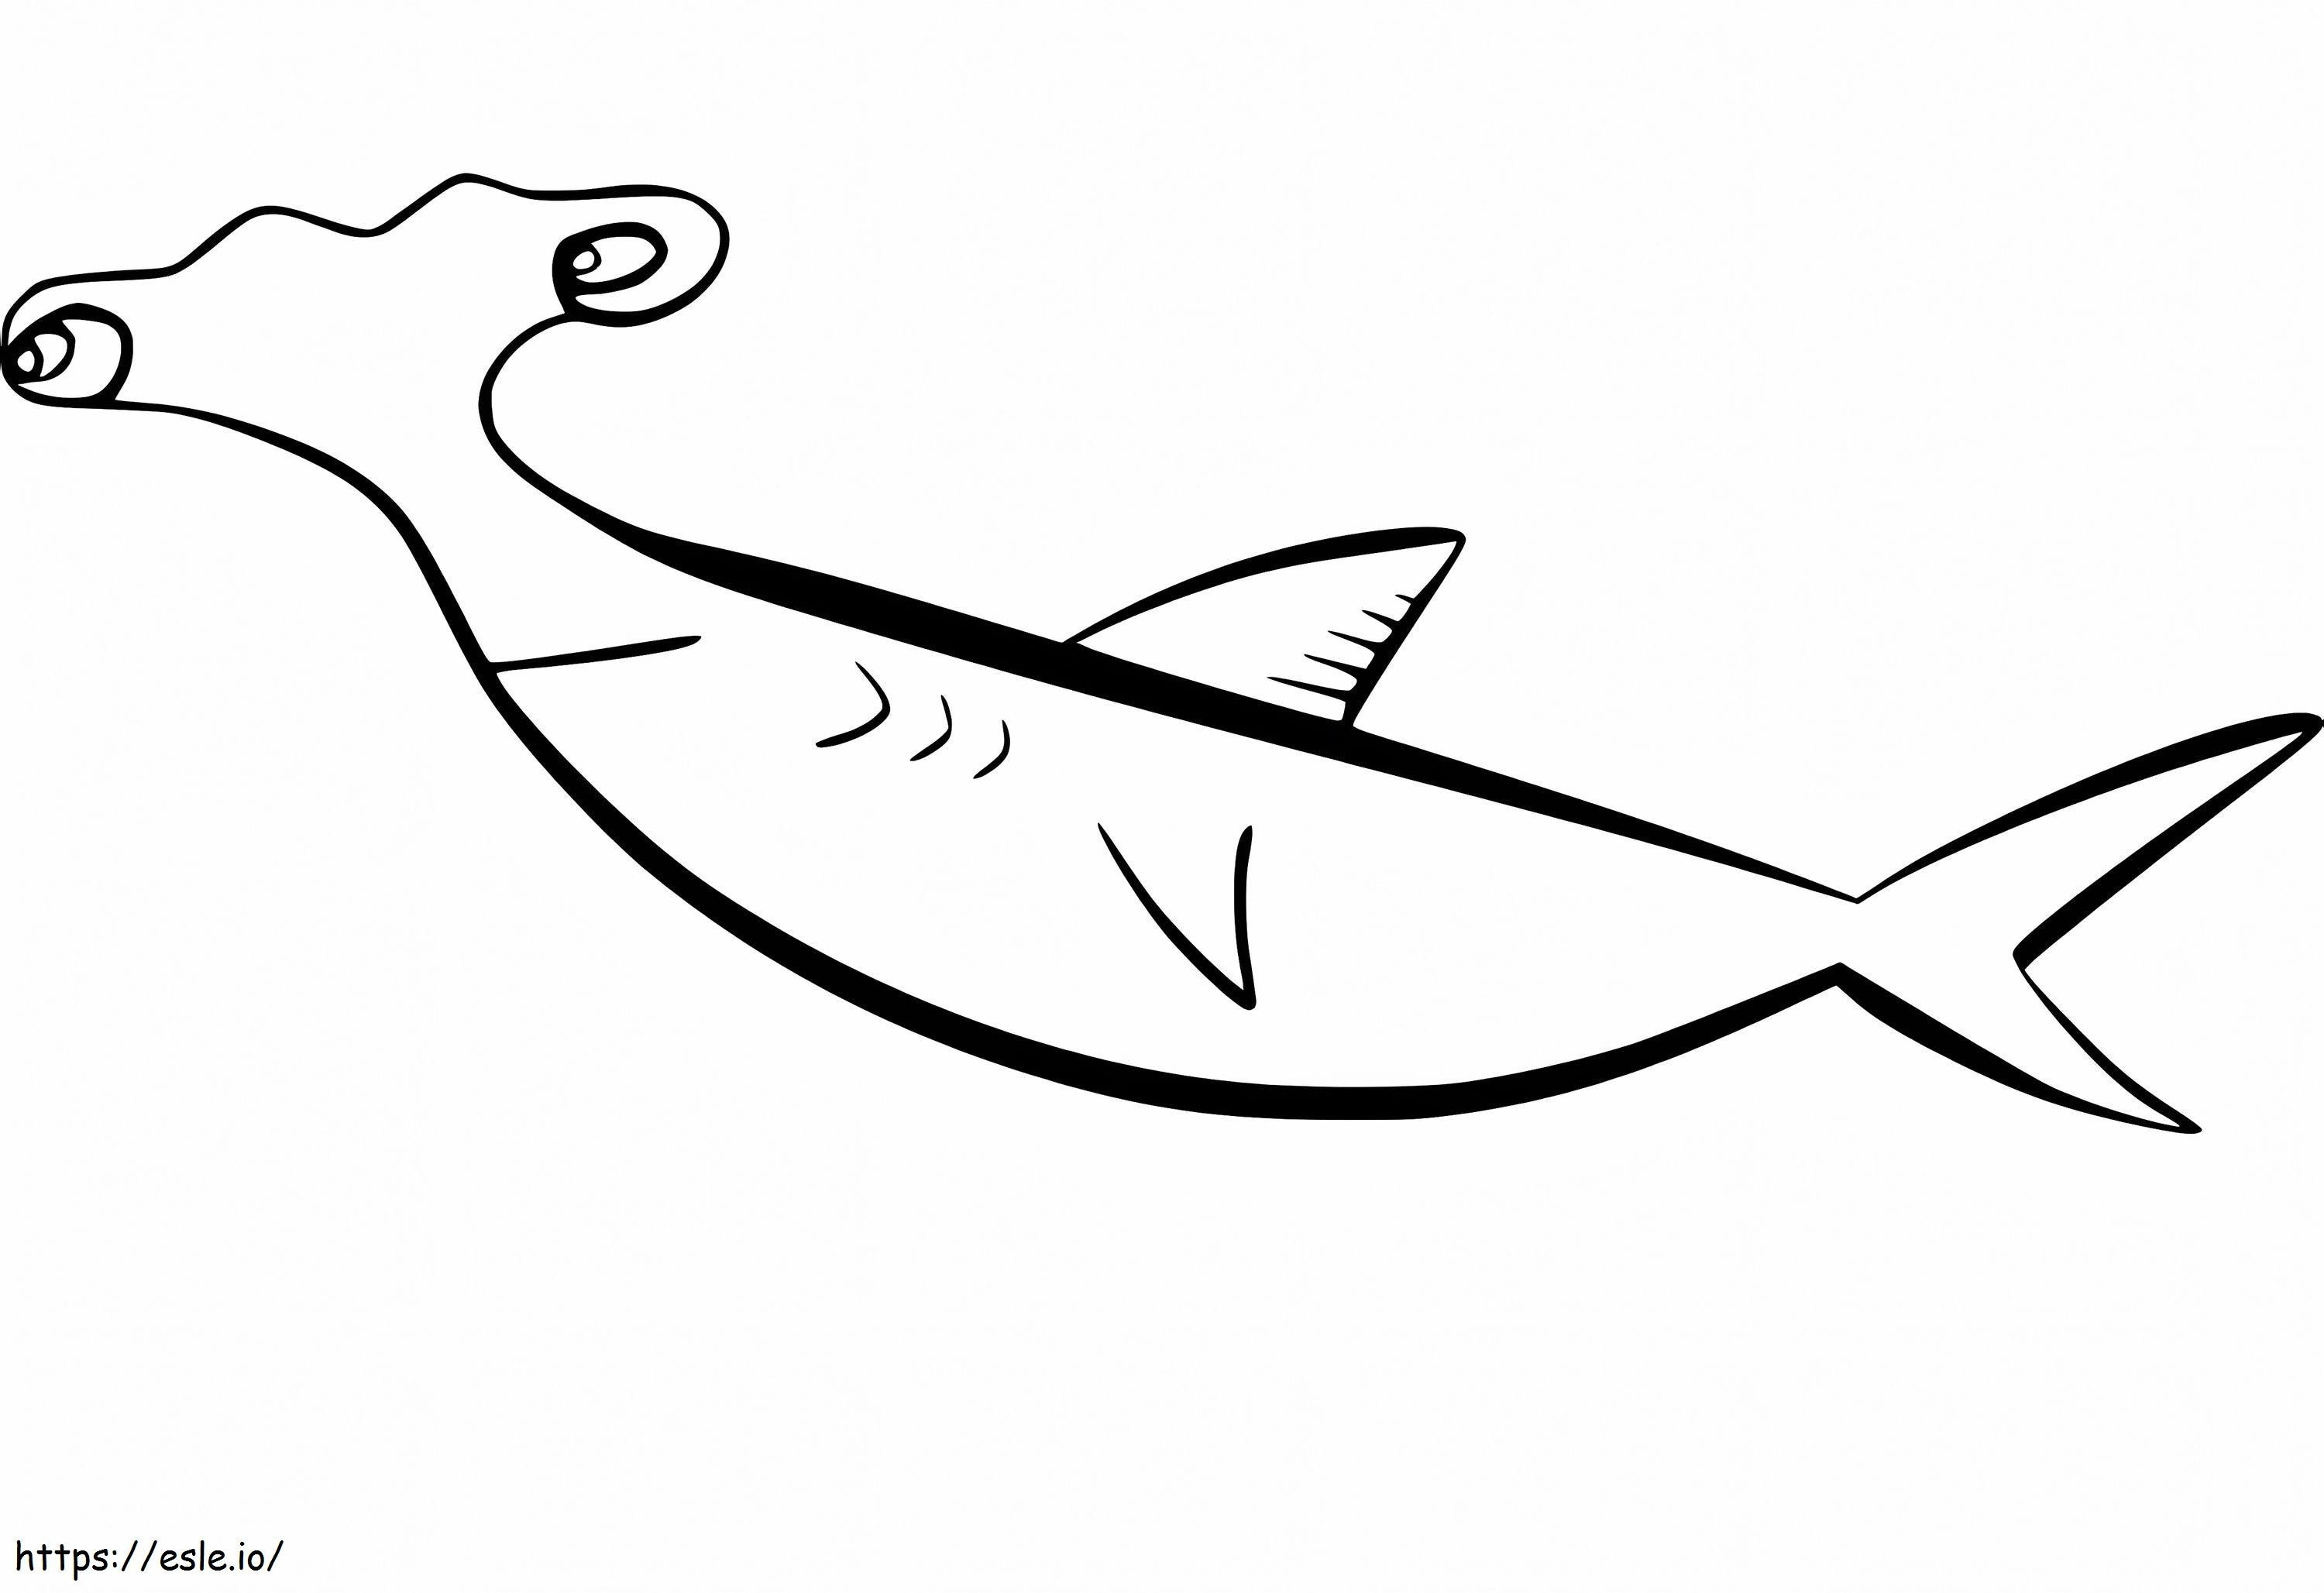 Tubarão-martelo engraçado para colorir